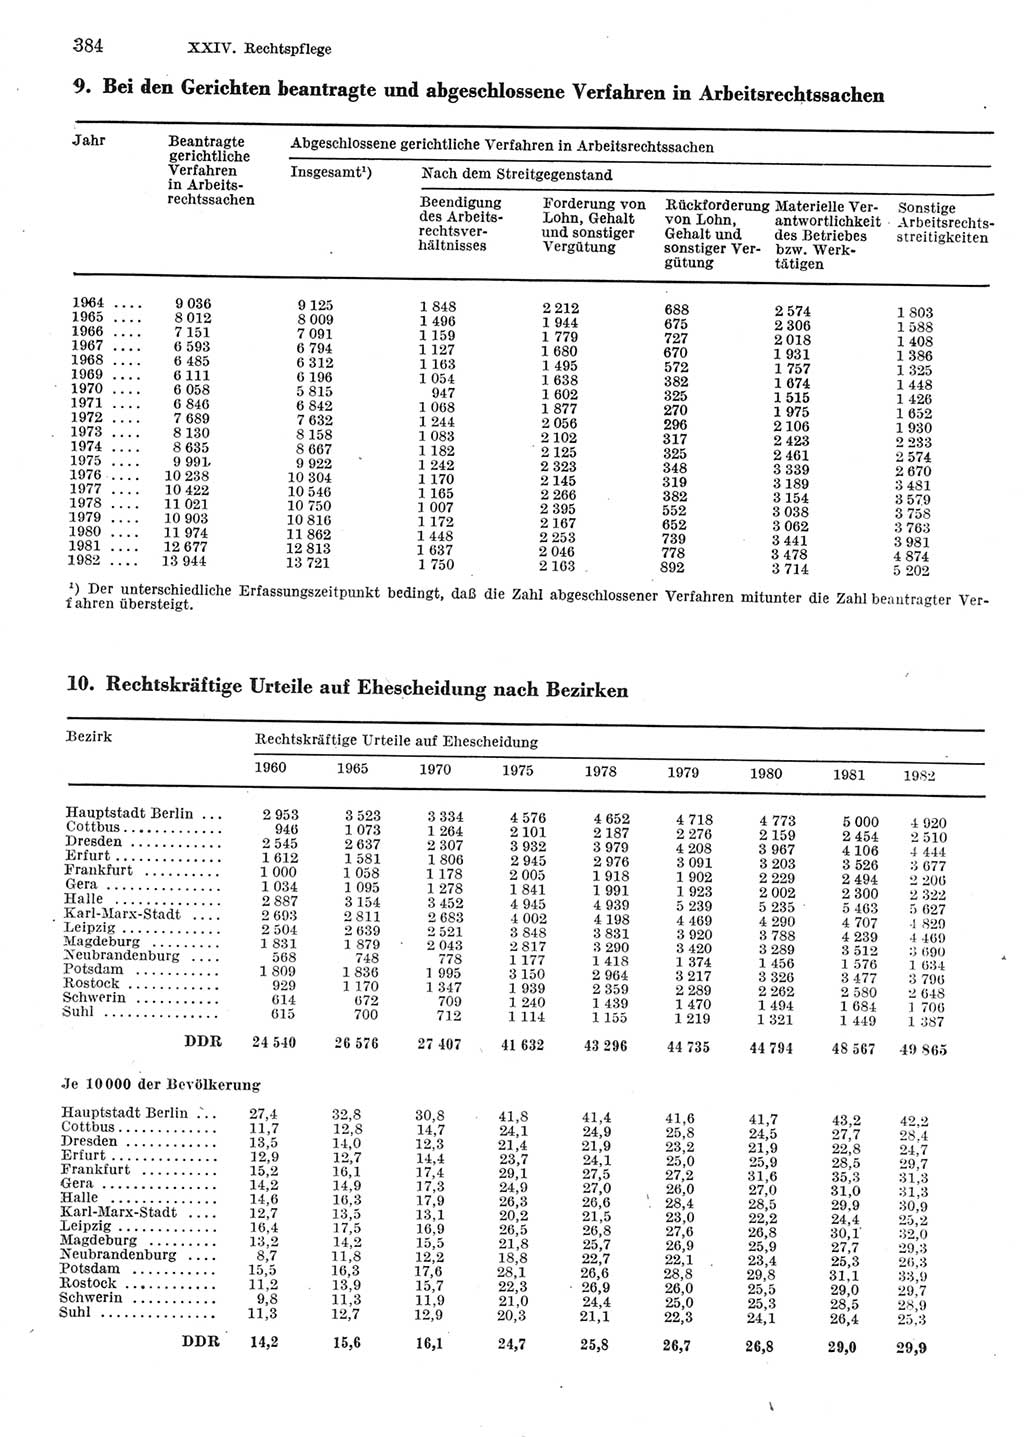 Statistisches Jahrbuch der Deutschen Demokratischen Republik (DDR) 1983, Seite 384 (Stat. Jb. DDR 1983, S. 384)